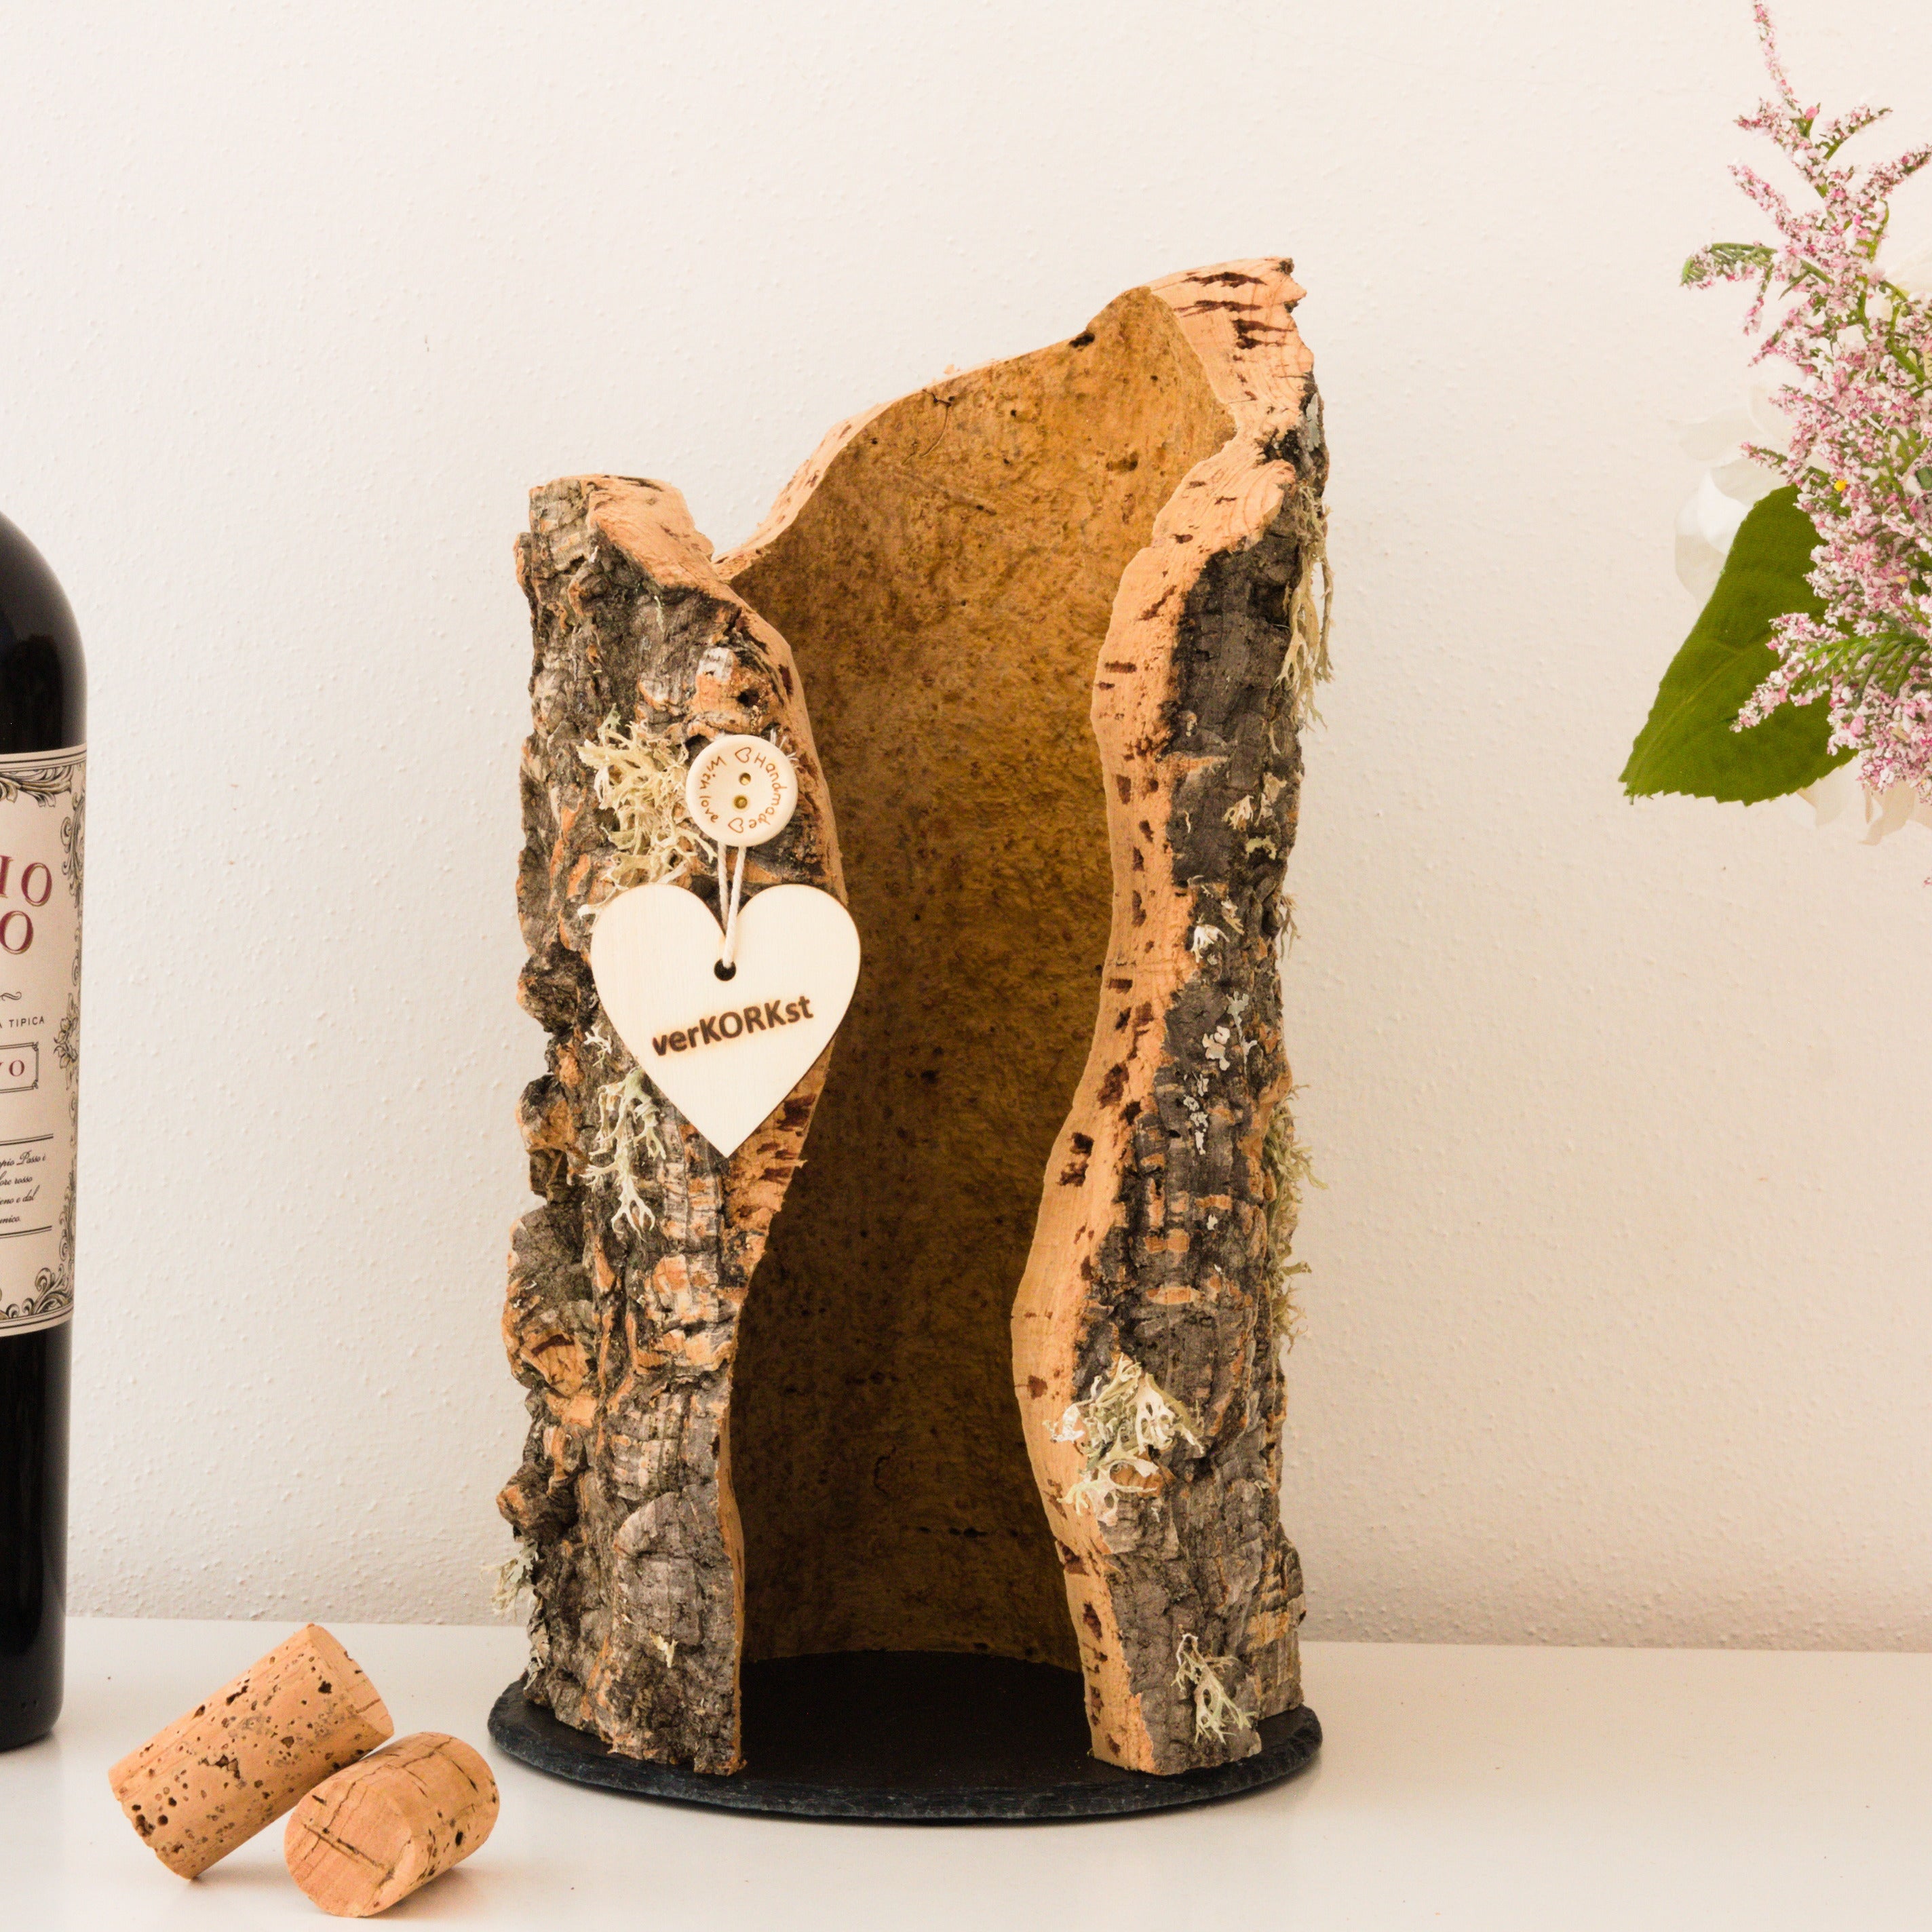 TOP gift idea * verKORKst premium cork wine stand * presentation of wine bottles * unique * water-repellent, handmade, sustainable, vegan